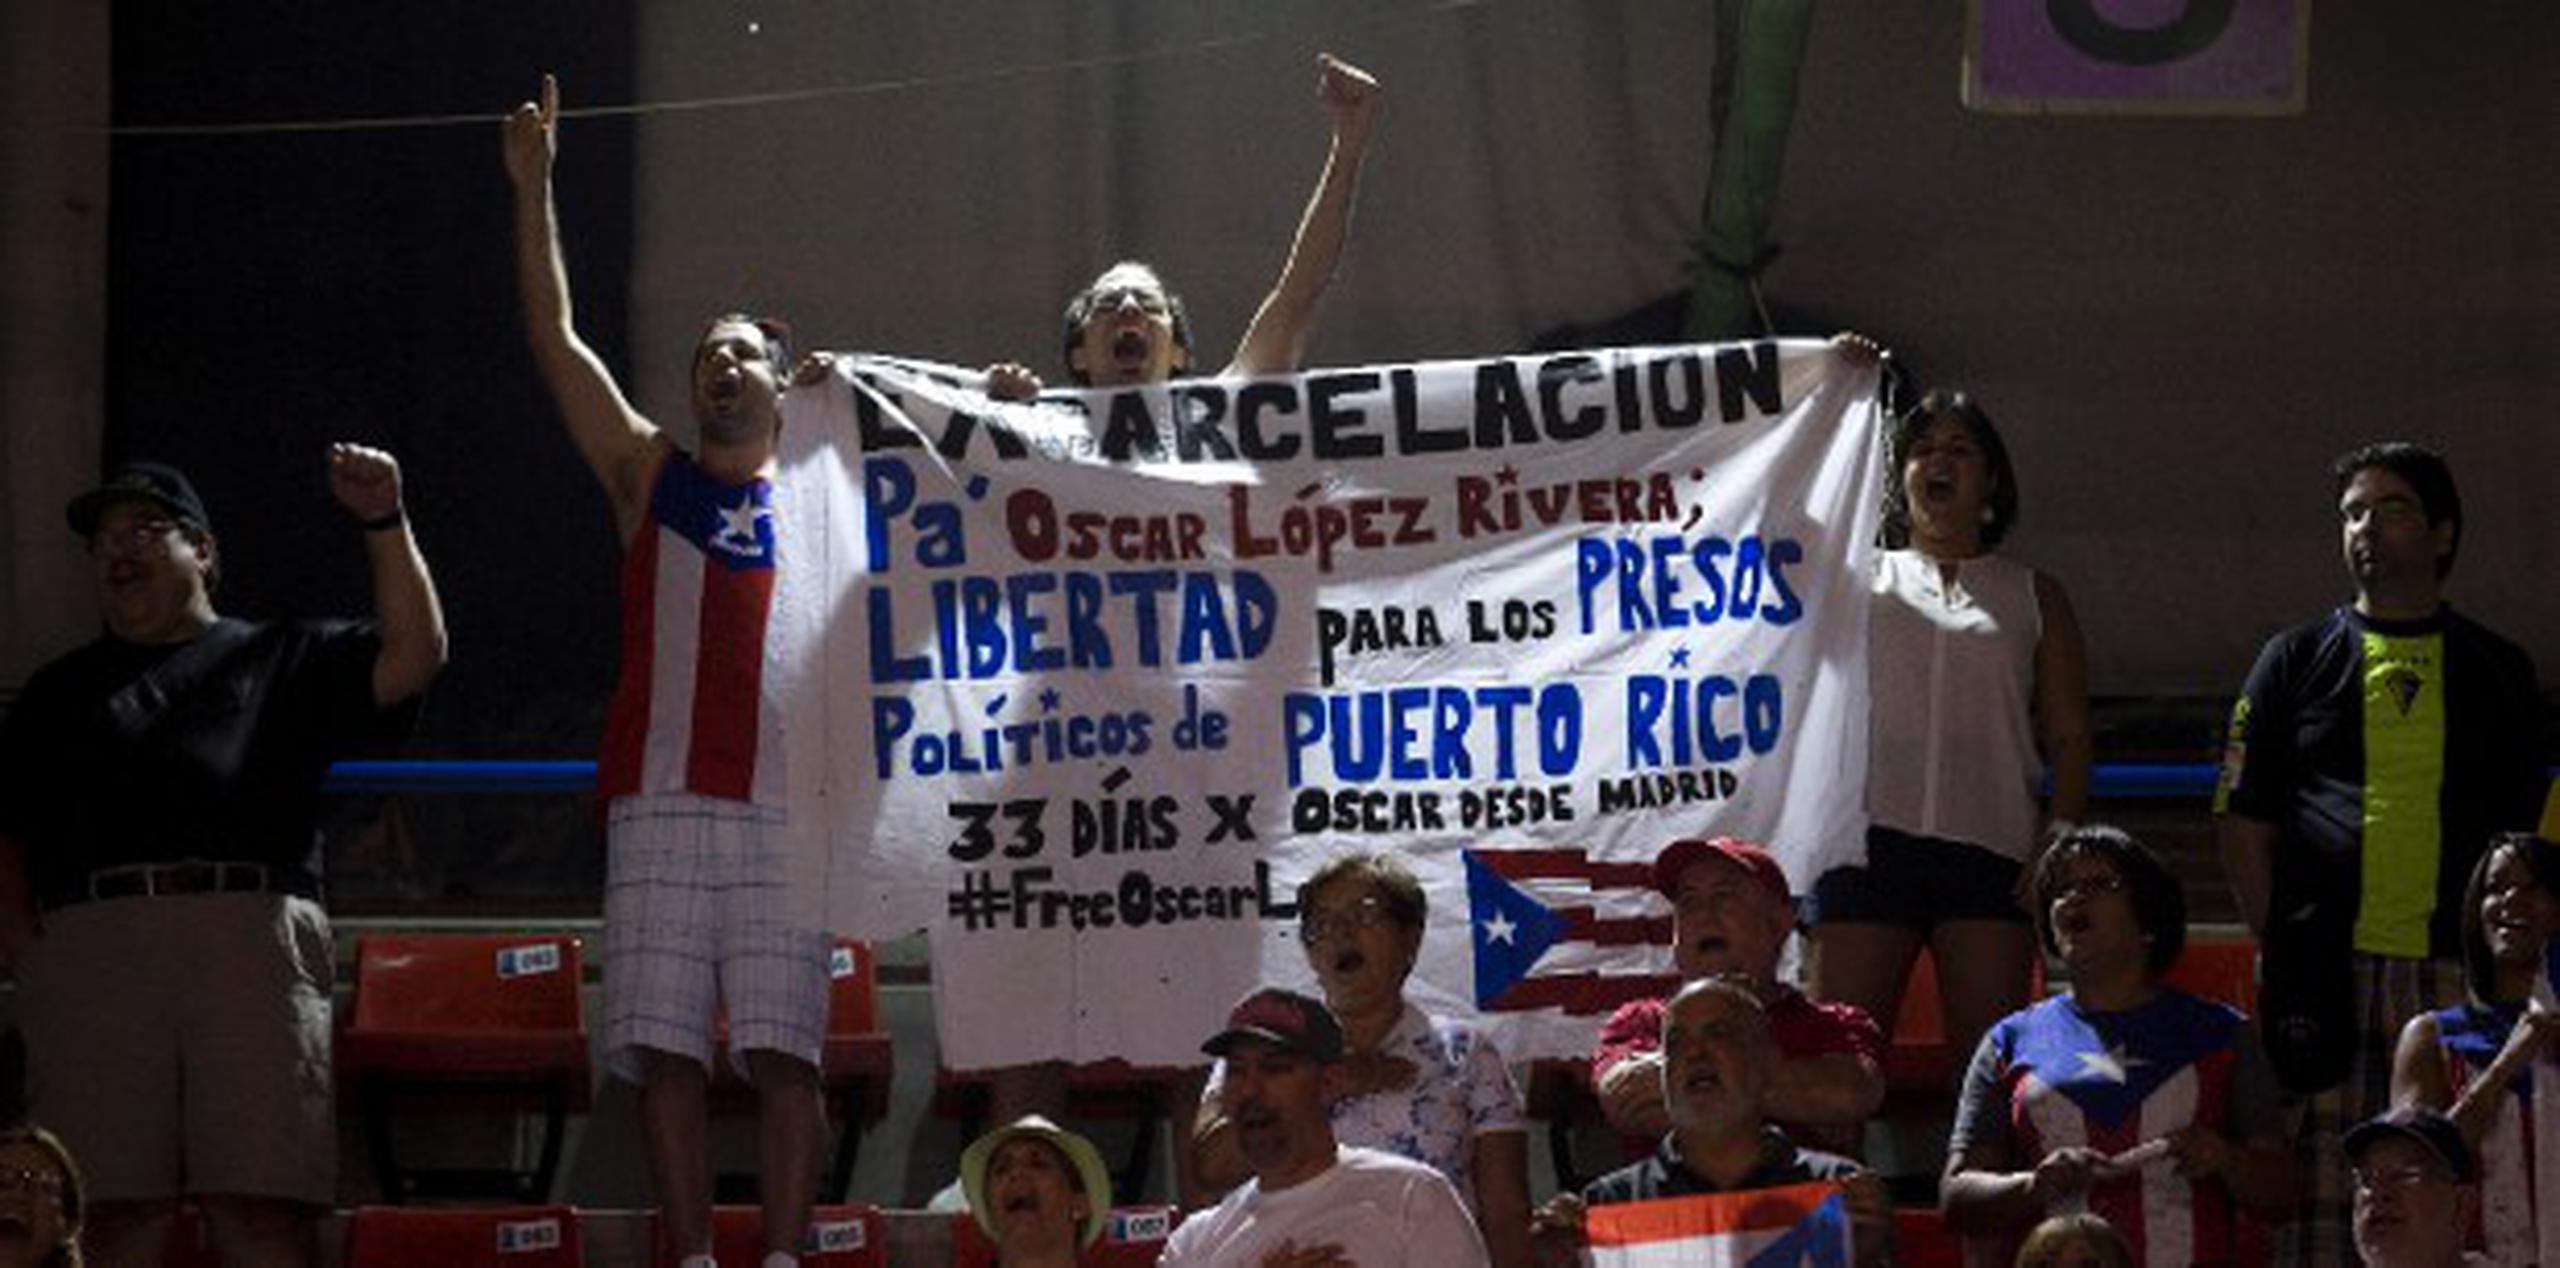 El grupo de puertorriqueños muestra su cartel a favor de la liberación de Oscar López. FIBA pidió que movieran la pancarta ya que prohíben protestas políticas en sus eventos. (Enviado especial / xavier. araujo@gfrmedia.com)